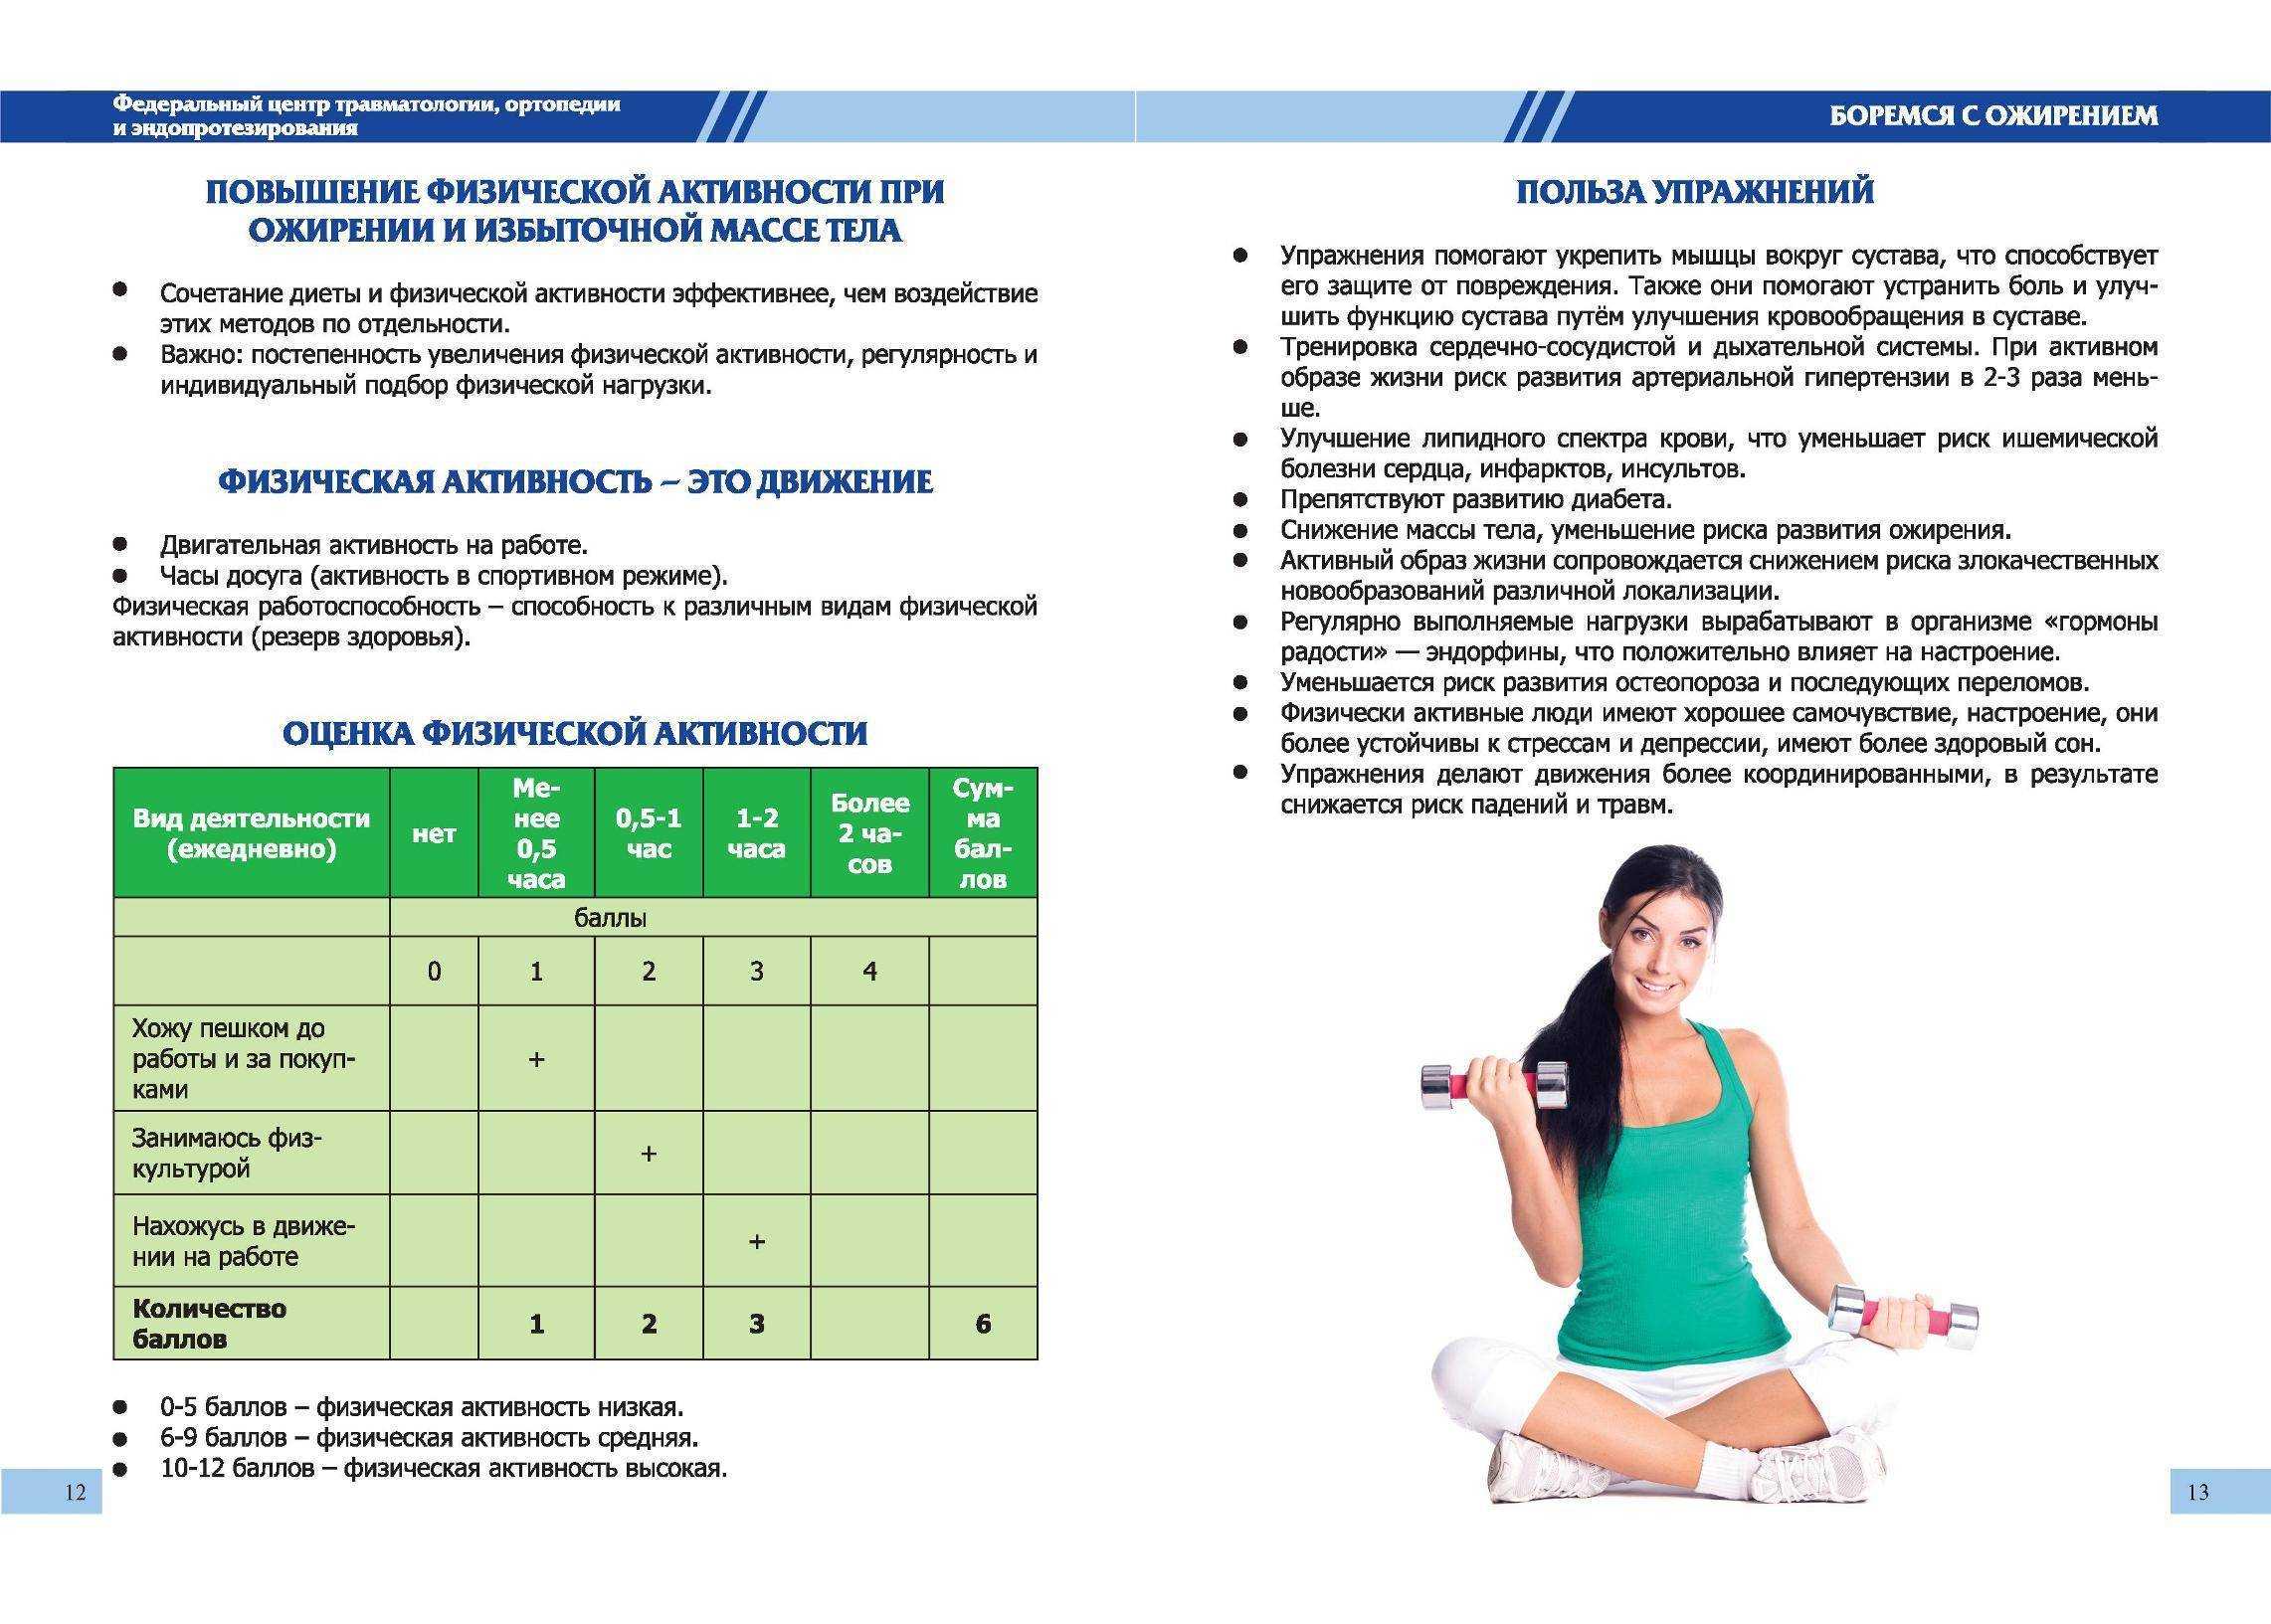 Тест на 7 ru. Рекомендации по снижению веса. Рекомендации по снижению массы тела. Рекомендации при лишнем весе. Рекомендации для людей с ожирением.